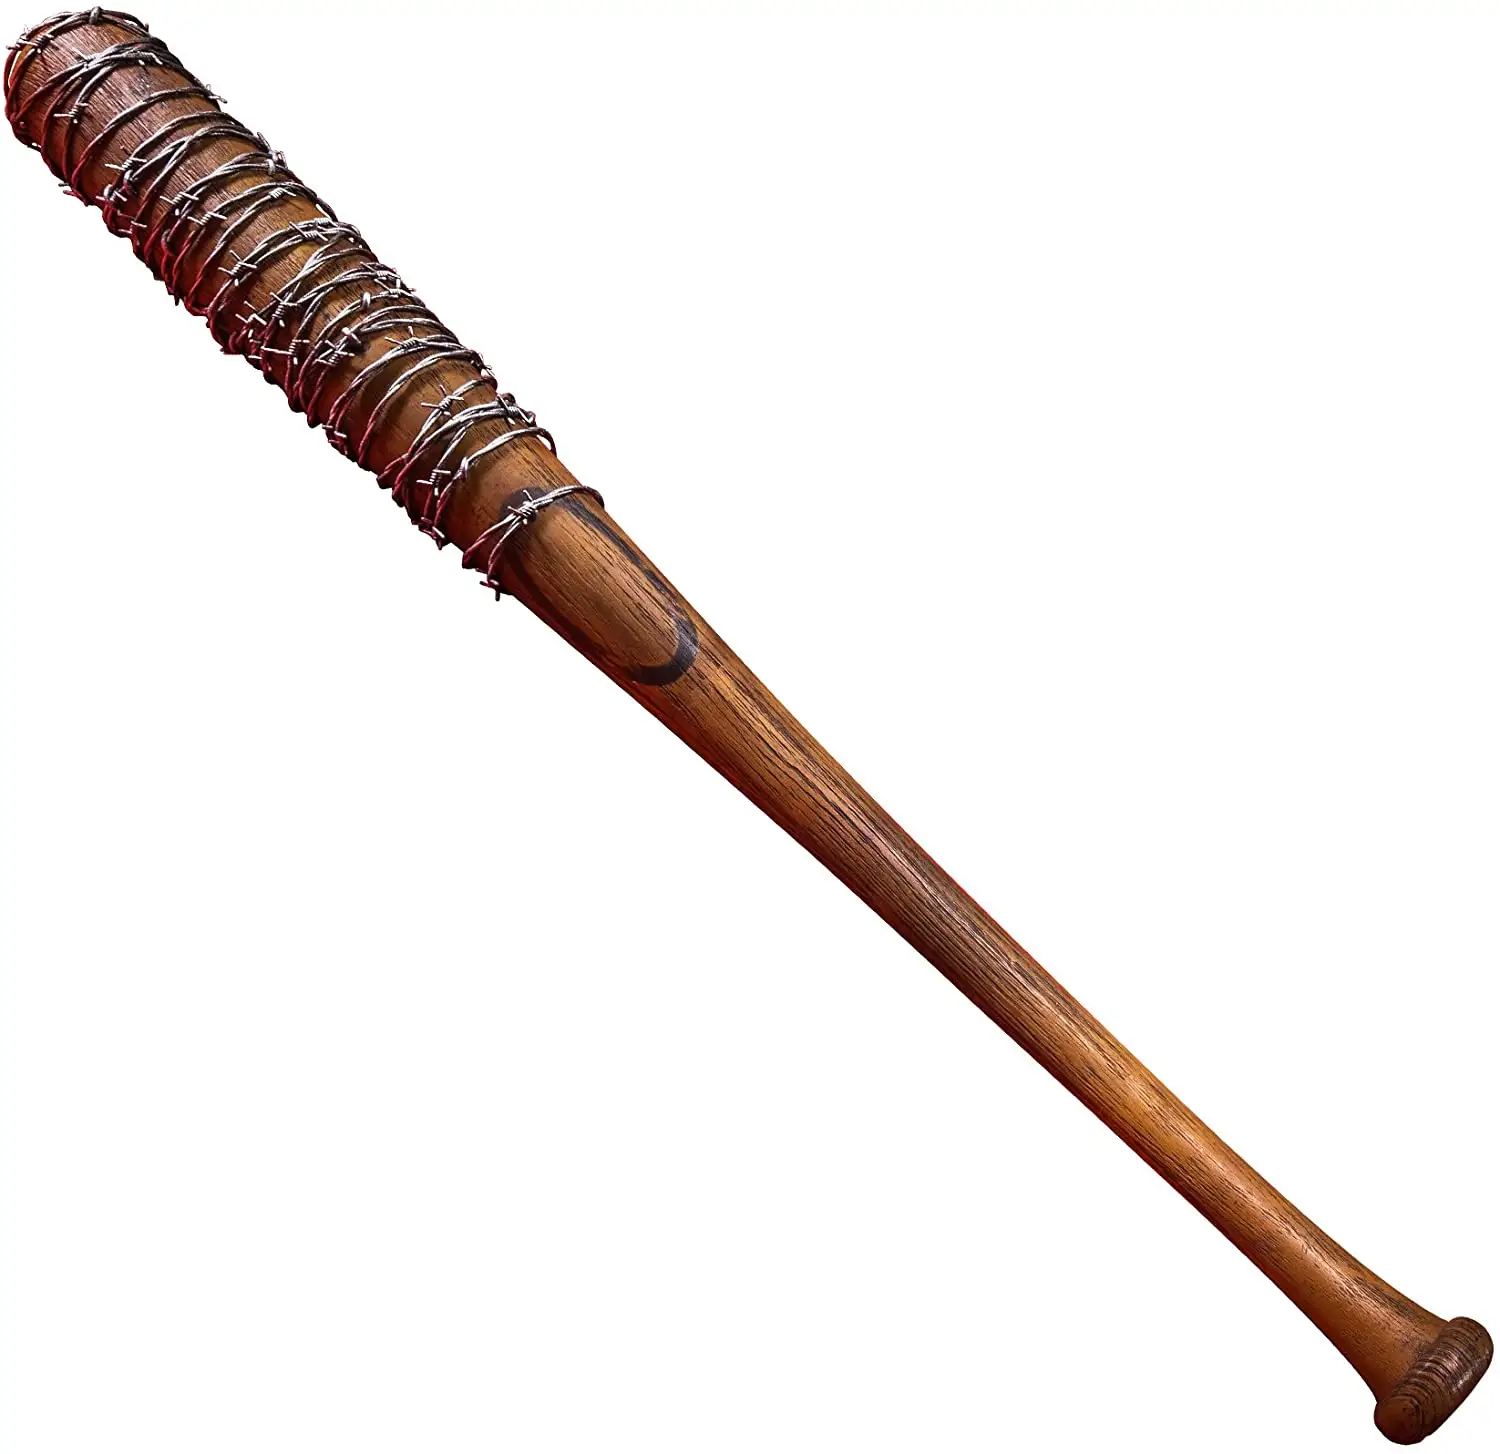 The Walking Dead Wire Wrapped Wood Baseball Bat by Standard International